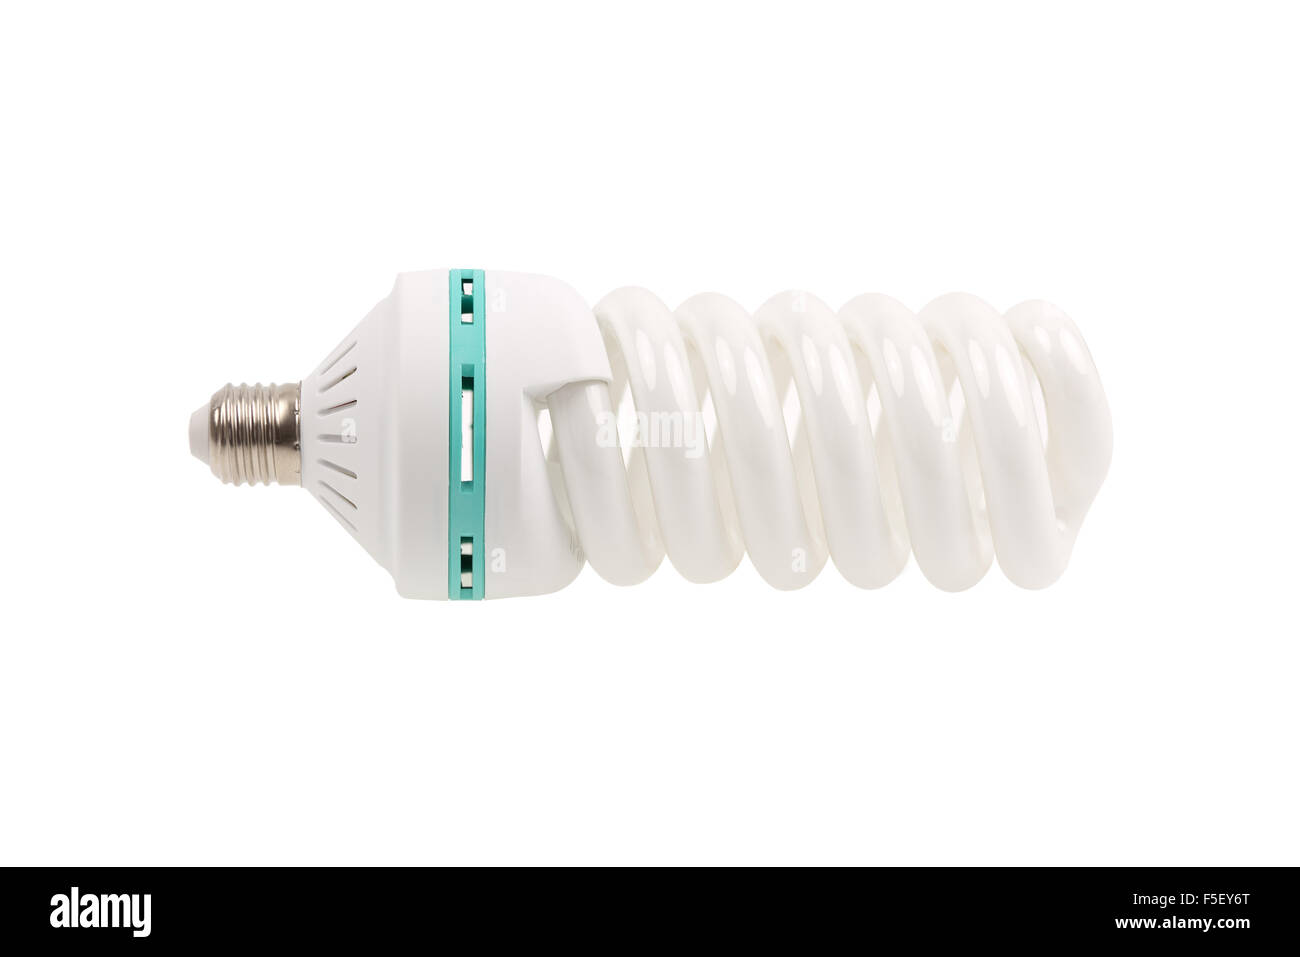 Una luce verde lampada risparmio energetico isolato su sfondo bianco. Una spirale di lampadine fluorescenti a basso consumo energetico. Foto Stock